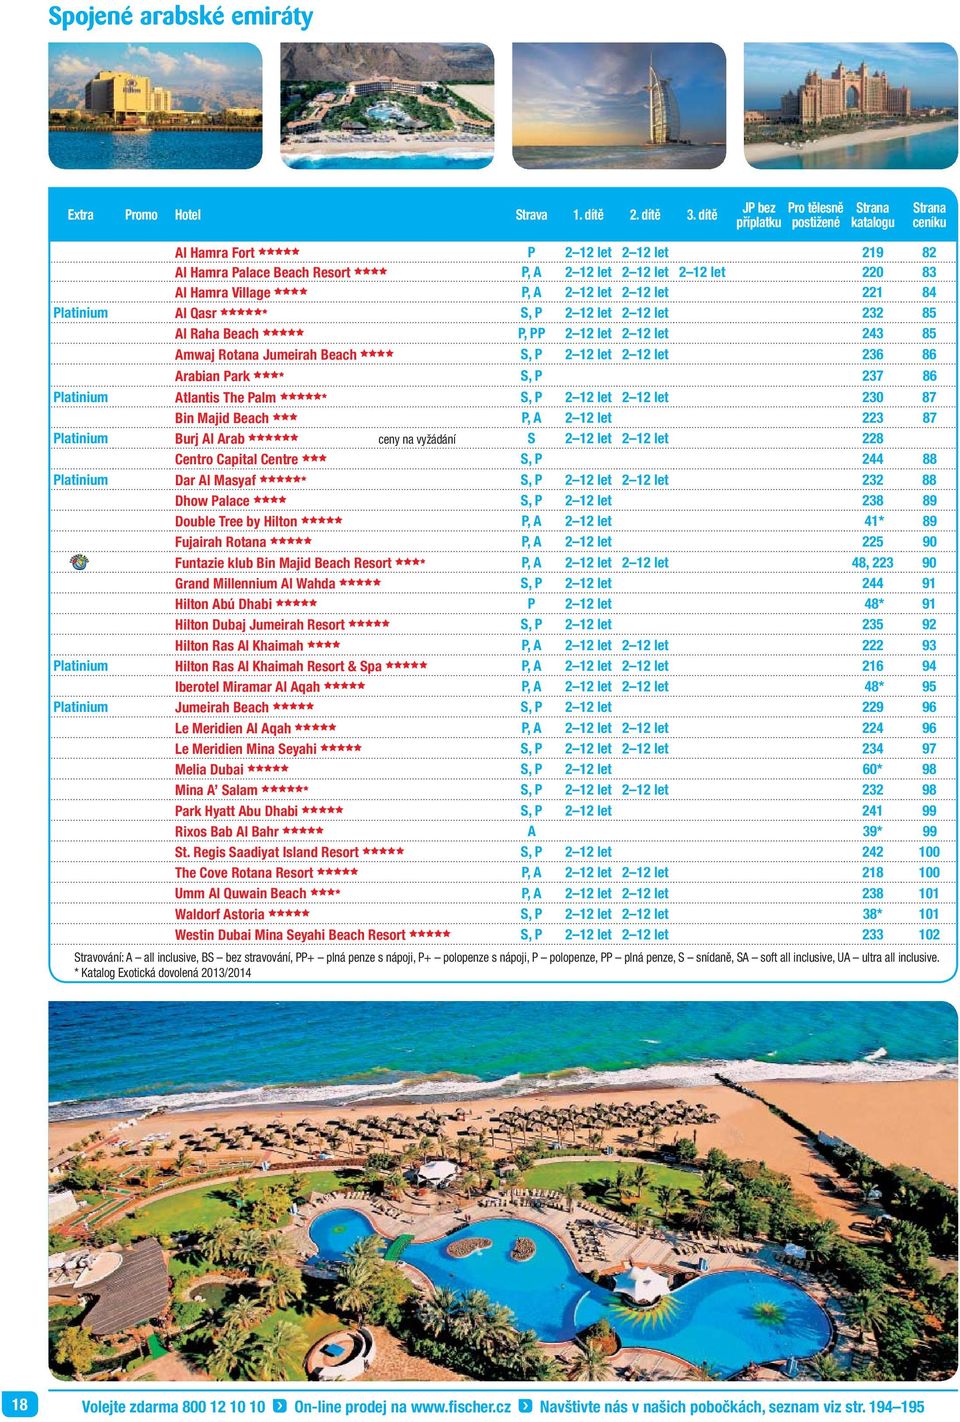 Hamra Village cccc P, A 2 12 let 2 12 let 221 84 Platinium Al Qasr cccccd S, P 2 12 let 2 12 let 232 85 Al Raha Beach ccccc P, PP 2 12 let 2 12 let 243 85 Amwaj Rotana Jumeirah Beach cccc S, P 2 12